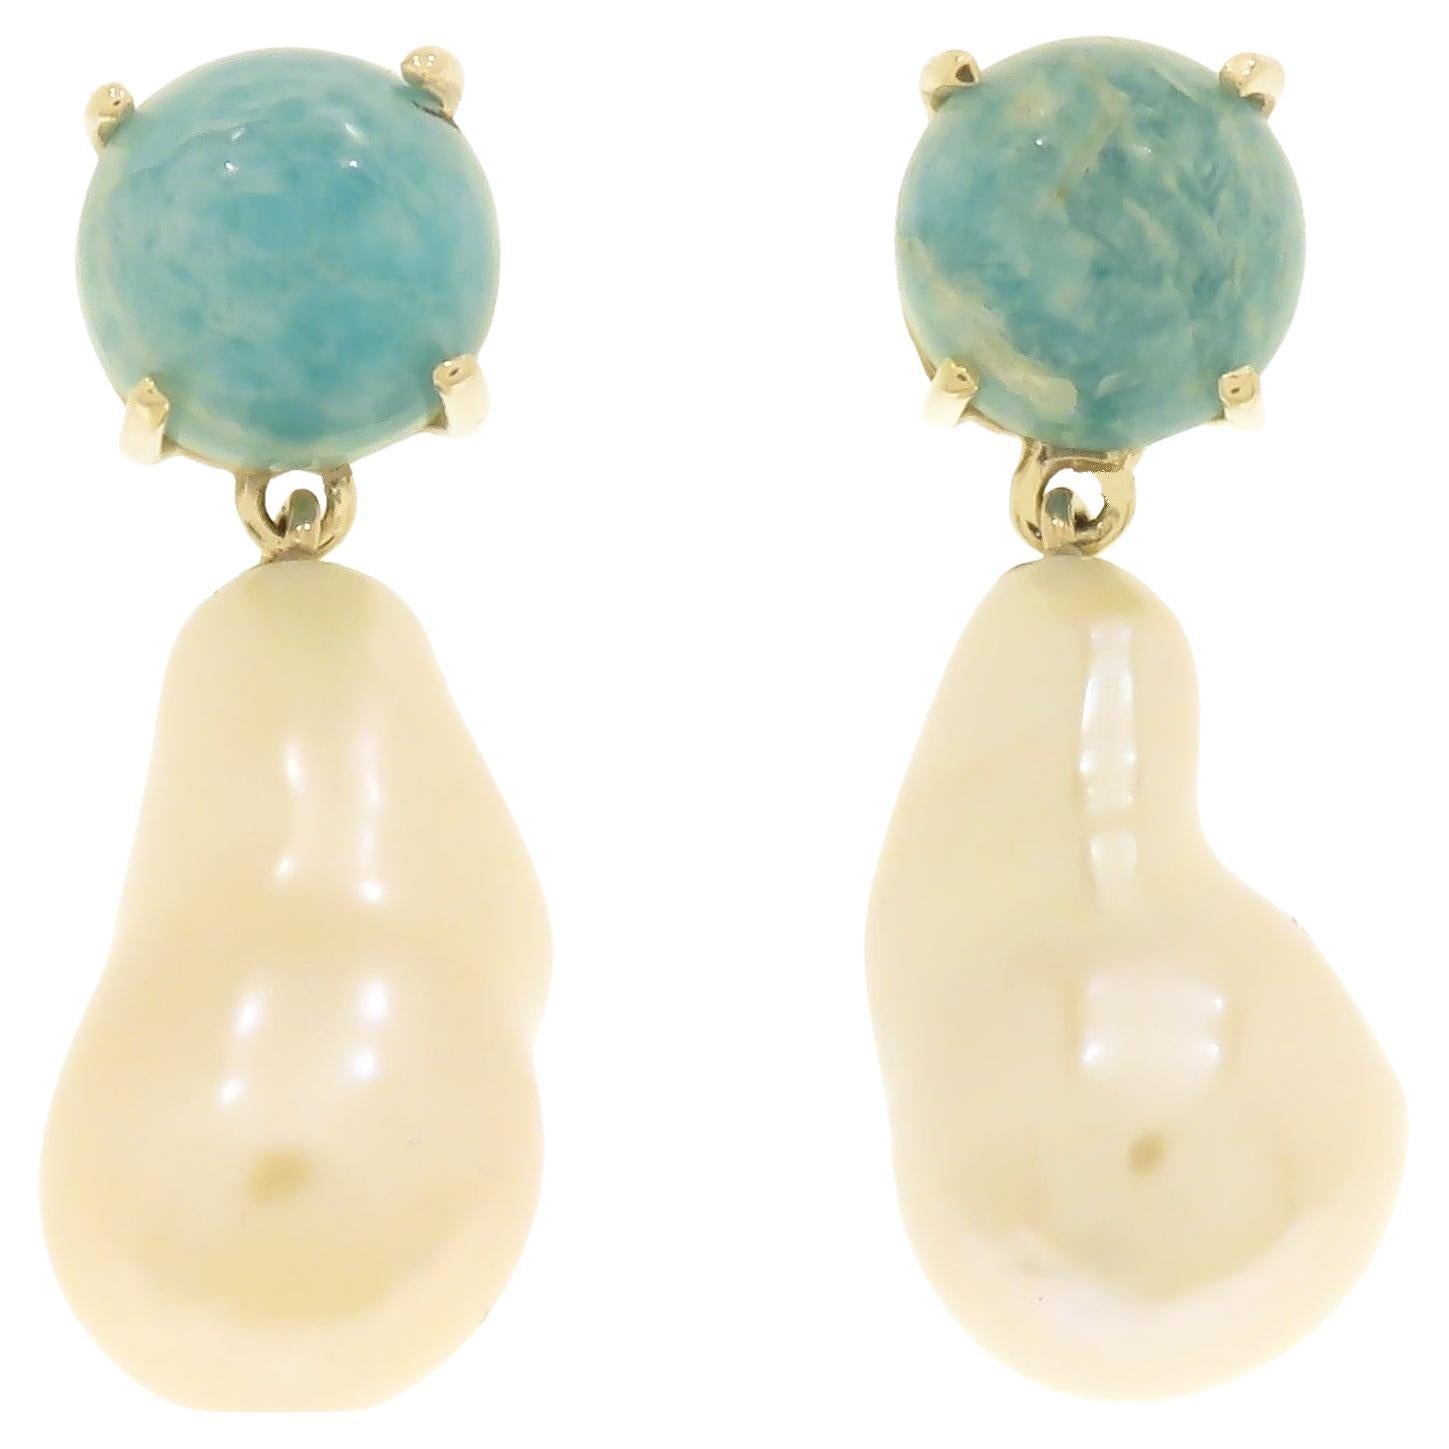 Clous d'oreilles en or blanc 9 carats avec turquoise et perles d'eau douce, fabriqués à la main en Italie